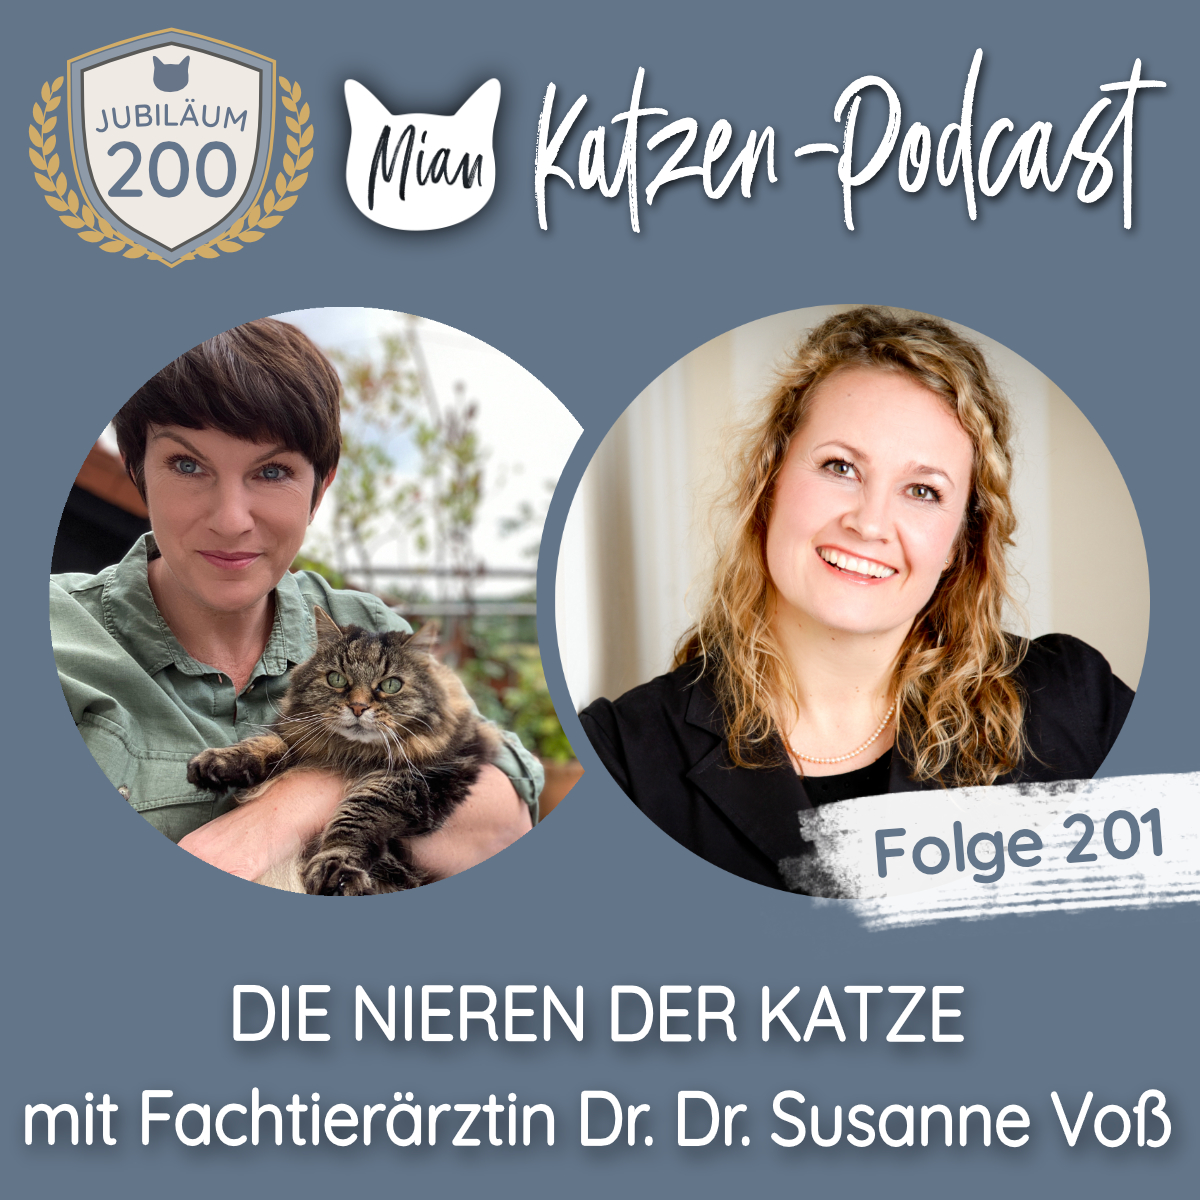 Die Nieren der Katze mit Fachtierärztin und Nierenexpertin Dr. Dr. Susanne Voß | MKP201